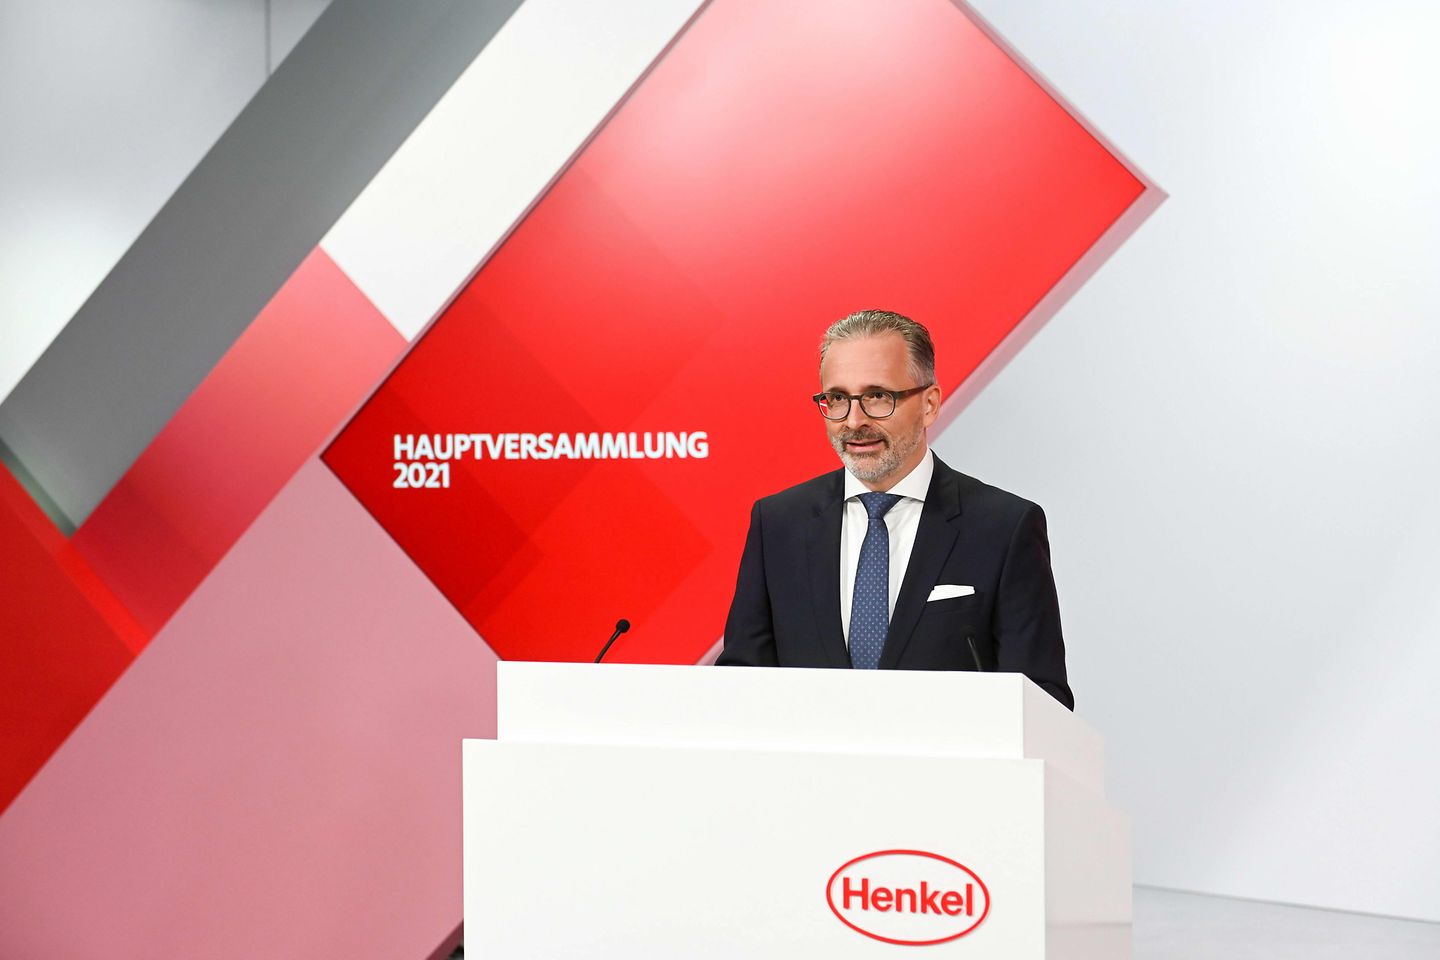 

Carsten Knobel, Vorsitzender des Vorstands von Henkel